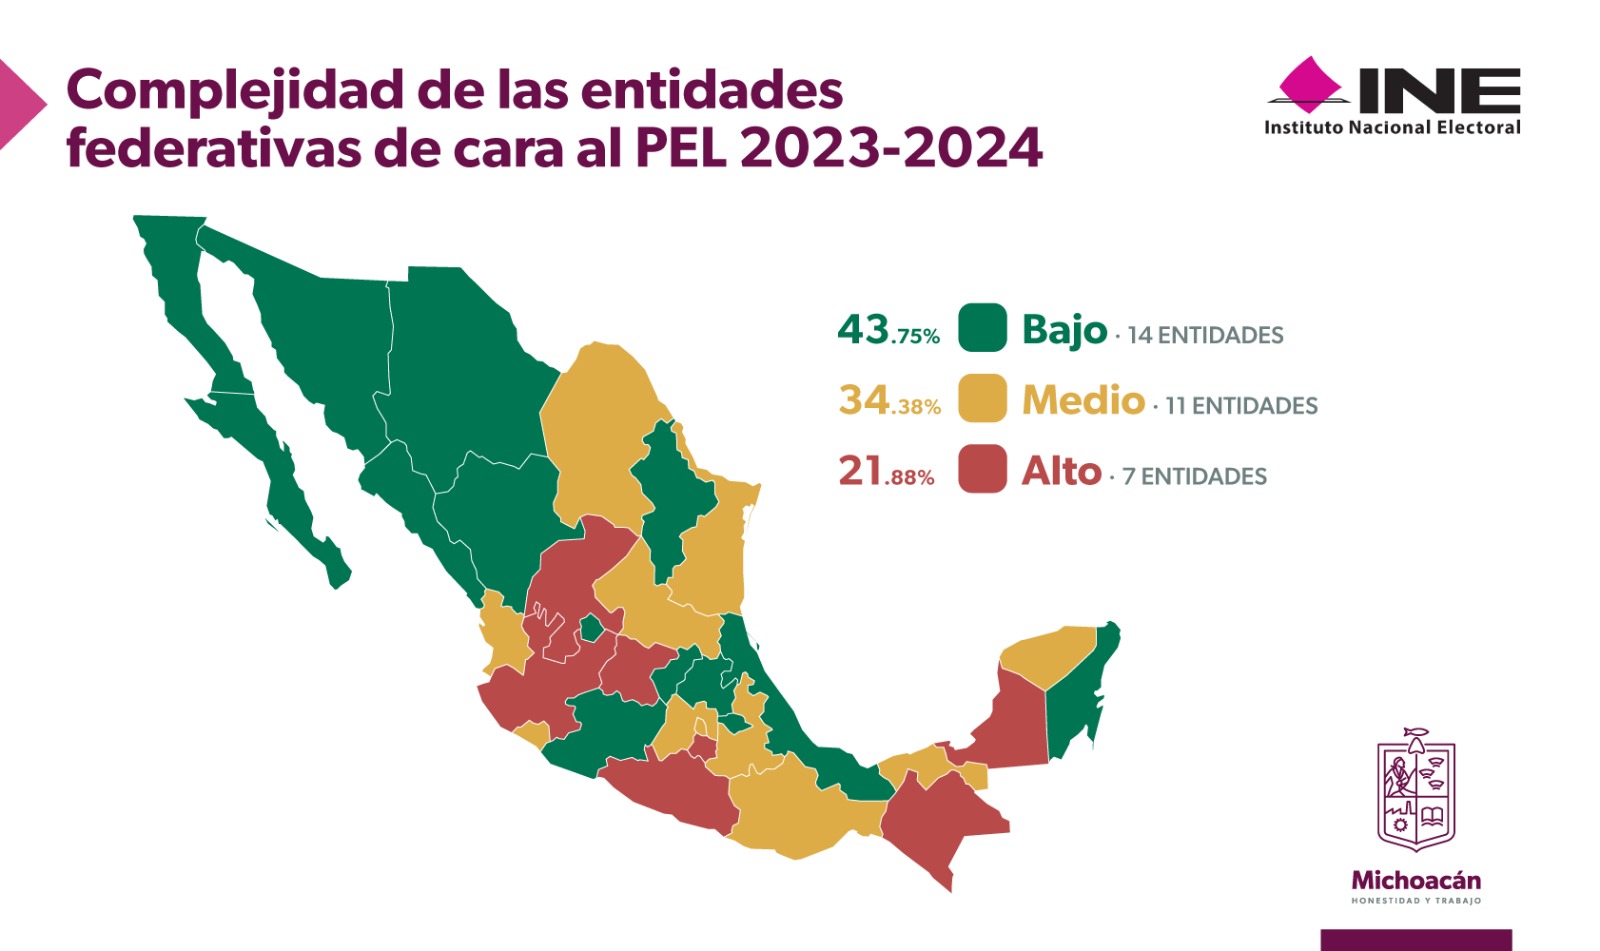 Michoacán, de los mejor valorados por INE frente al proceso electoral 2023-2024